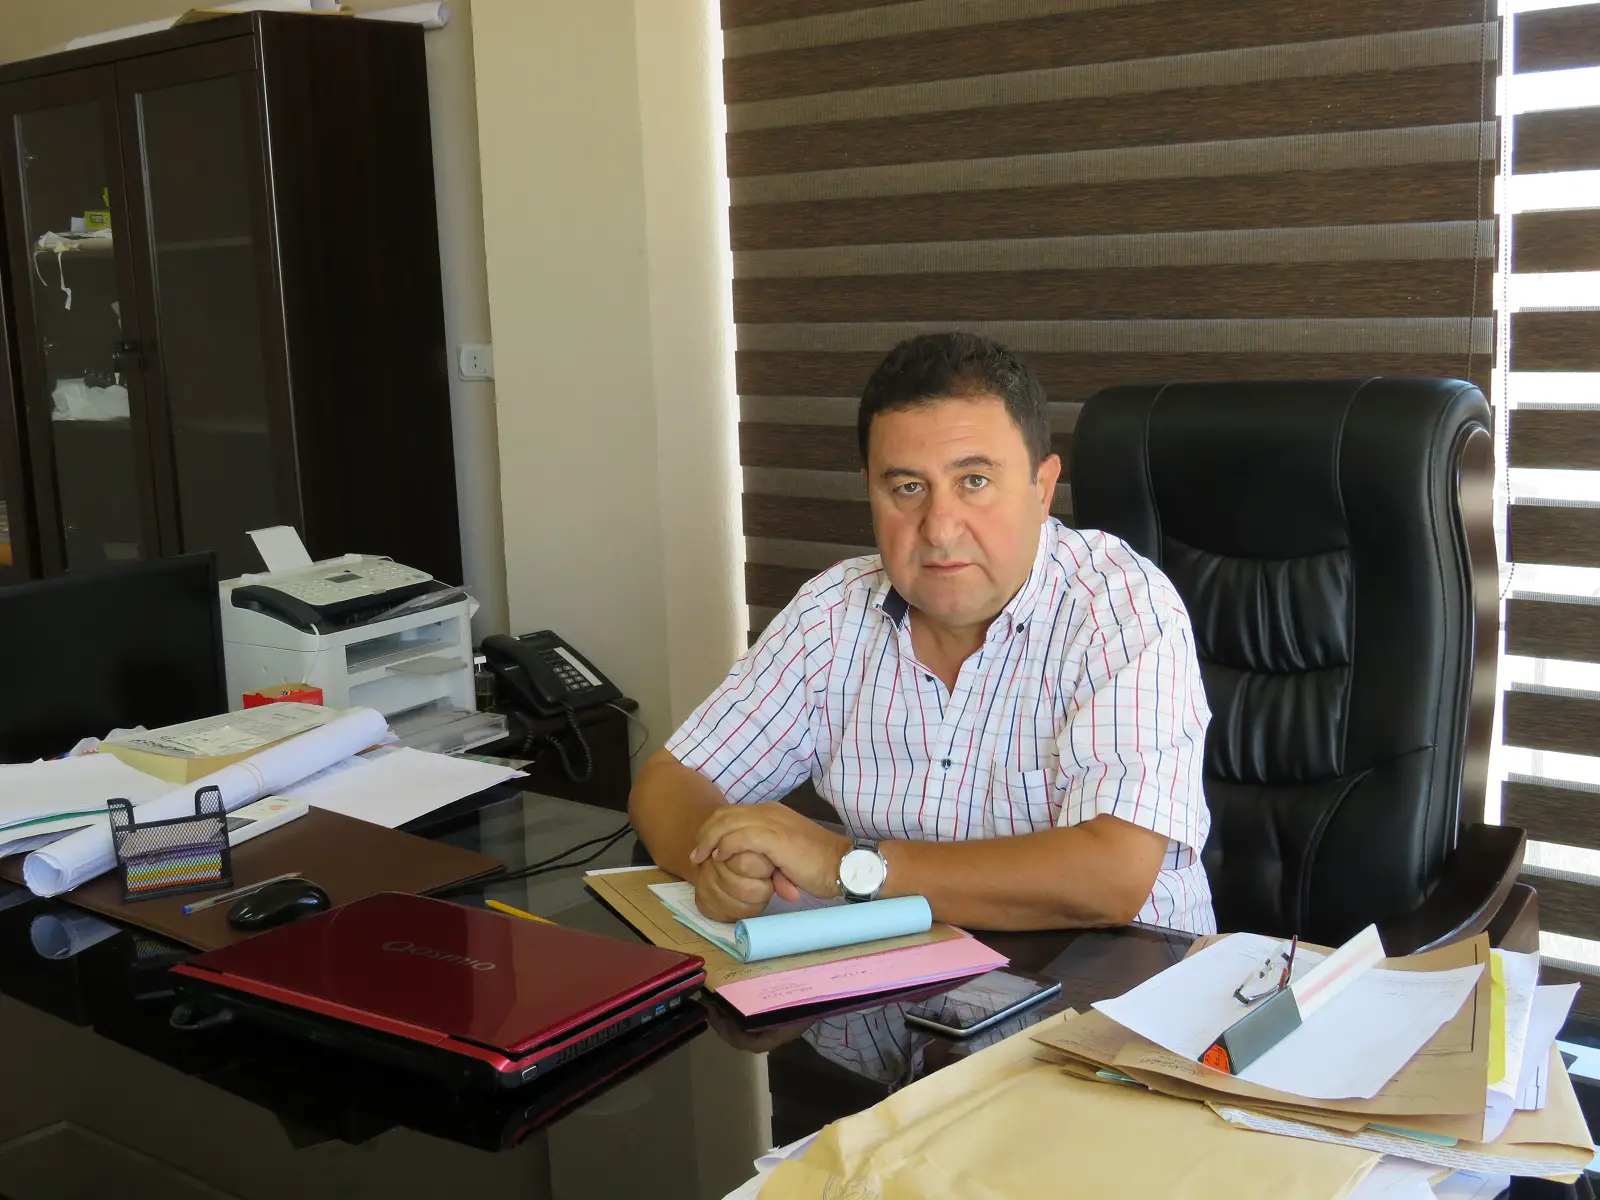 علي دياب، رئيس دائرة المساحة،  يتمتع بخبرة وطيفية على مدى 23 سنة كسبها خلال عمله في دوائر صيدا